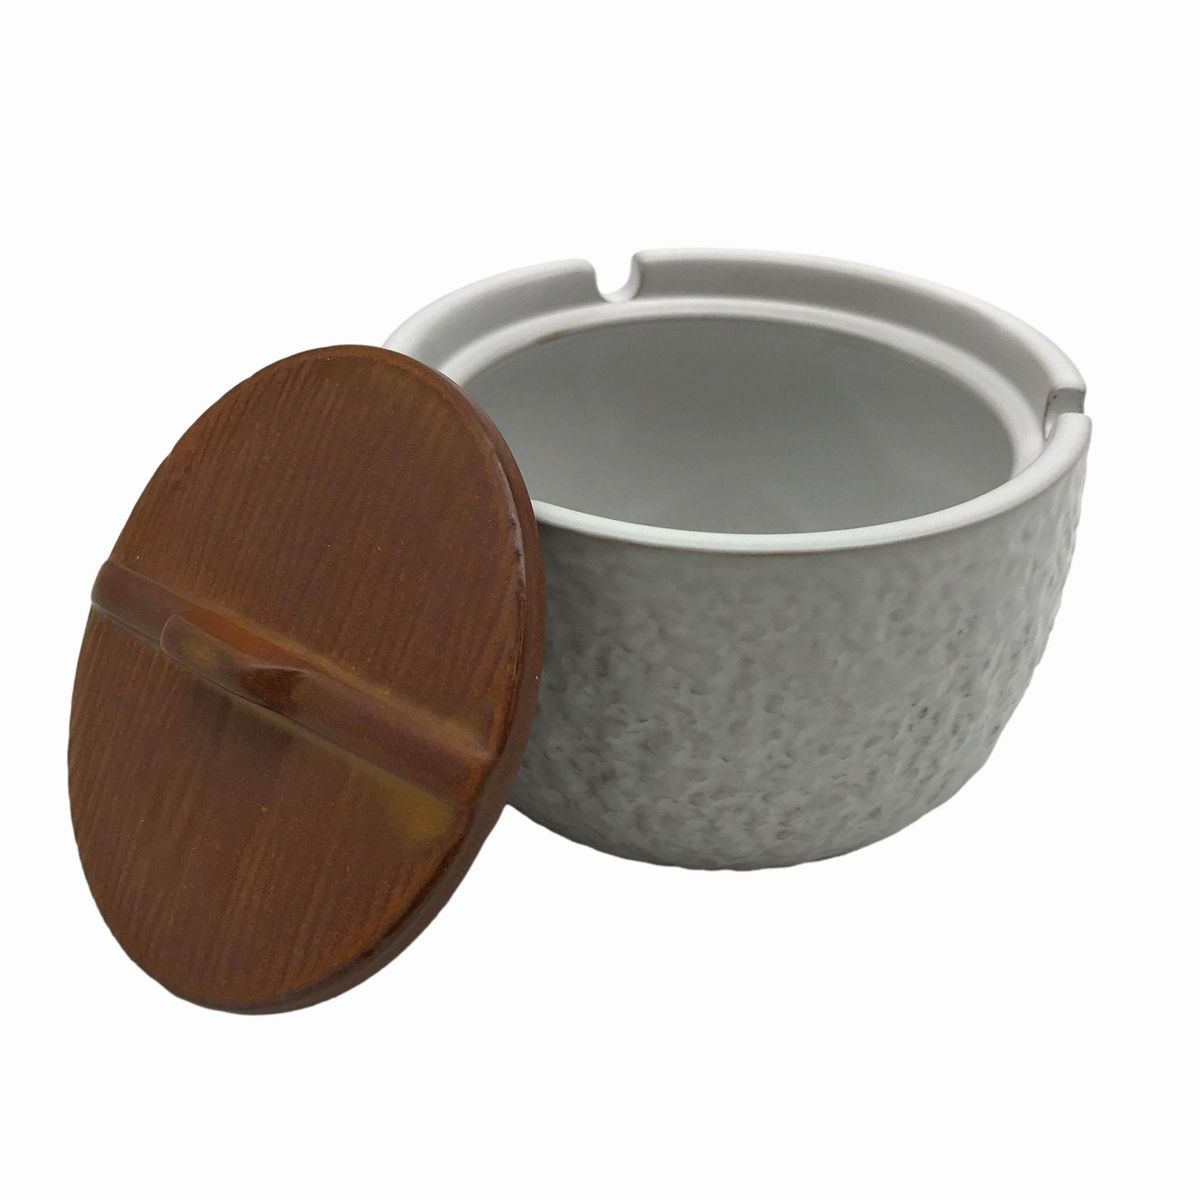 【訳あり】灰皿 和モダン 丸い木製風蓋付き アンティーク風 陶器製 (白)